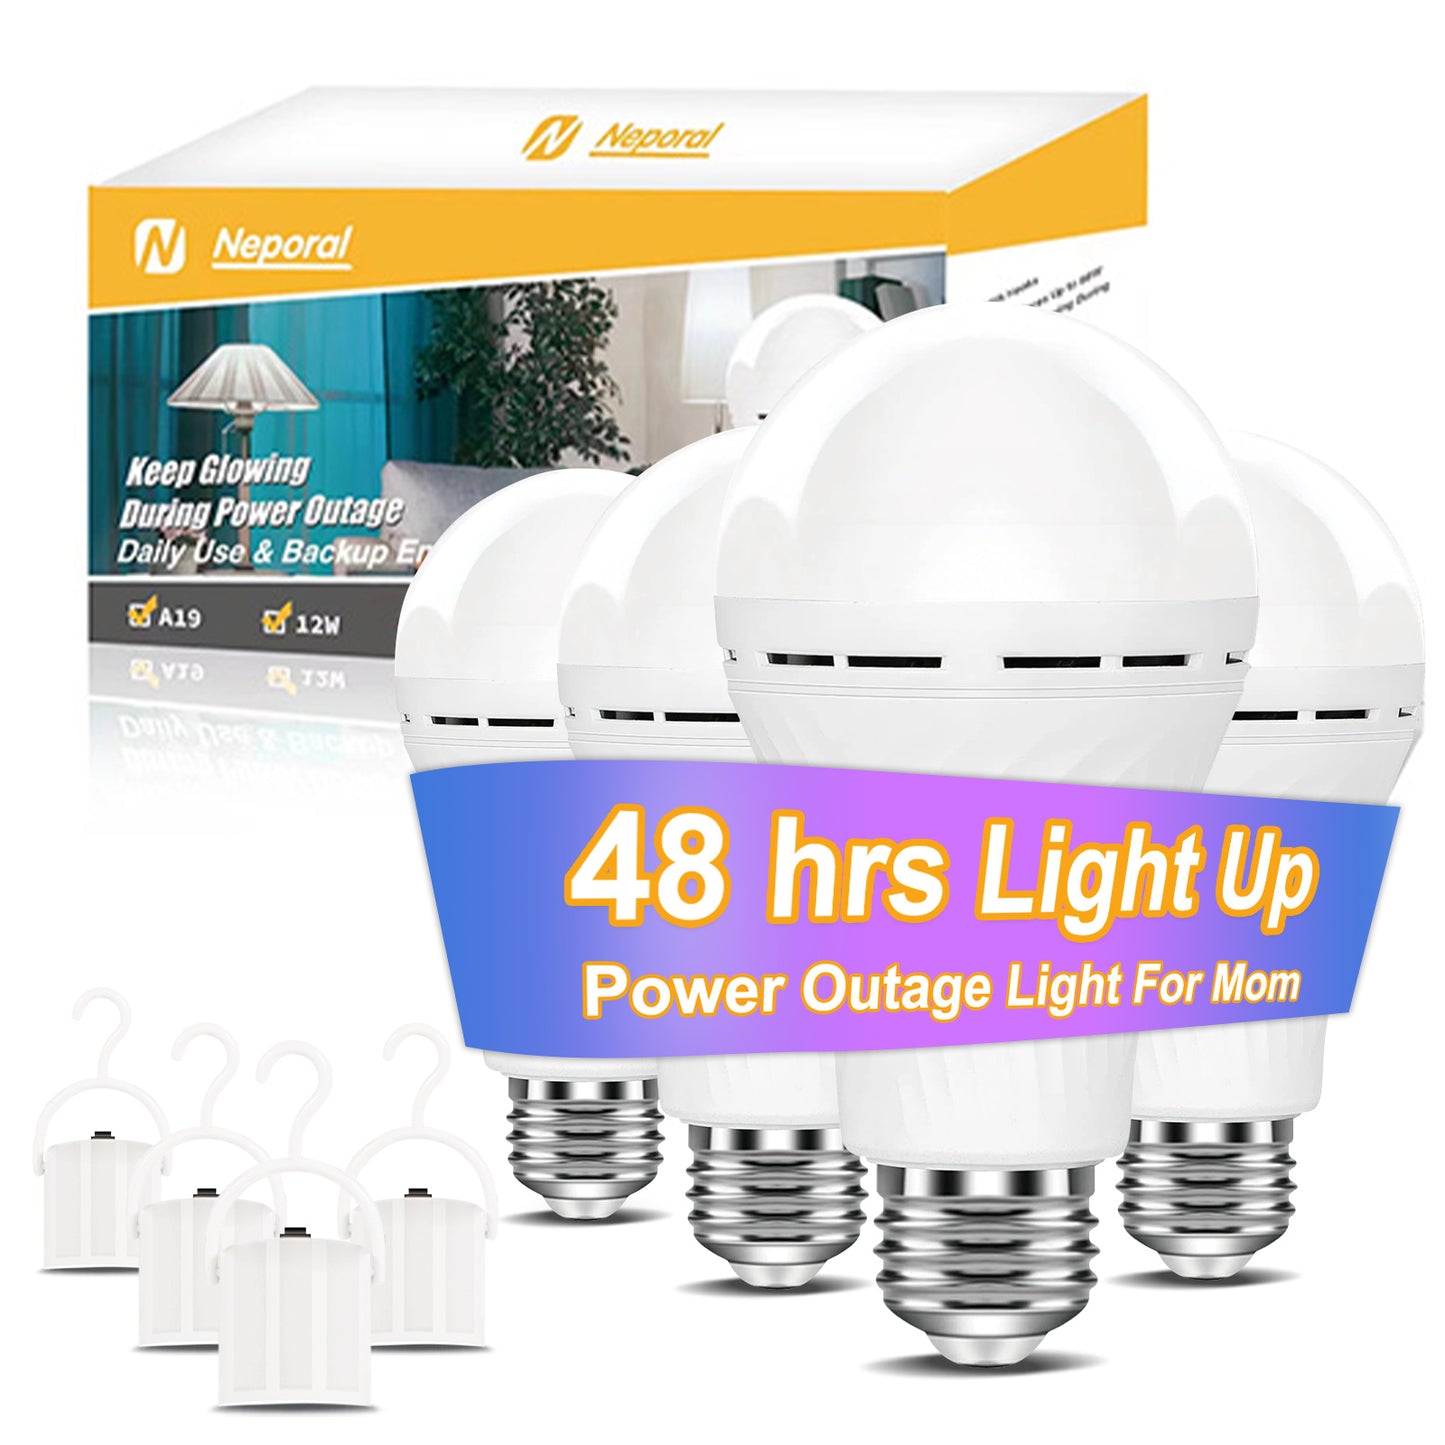 https://neporallighting.com/cdn/shop/files/rechargeablelightbulbsbatteryoperatedlightbulbbatterylightbulb_5.jpg?v=1692669213&width=1445